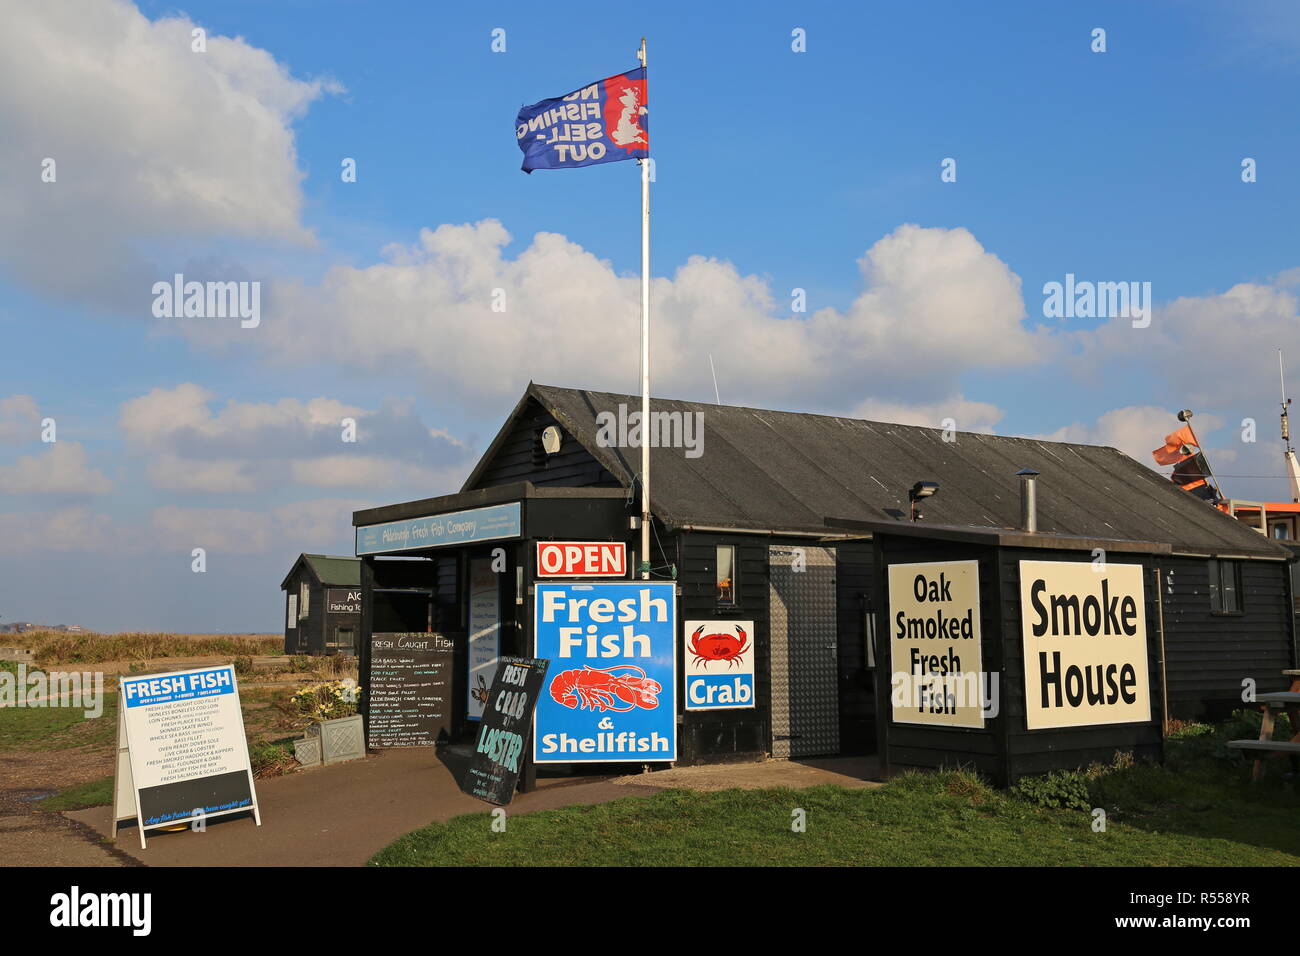 Plage du poisson frais du marché, traversez la place, Aldeburgh, Suffolk district côtier, Suffolk, East Anglia, Angleterre, Grande-Bretagne, Royaume-Uni, Europe Banque D'Images